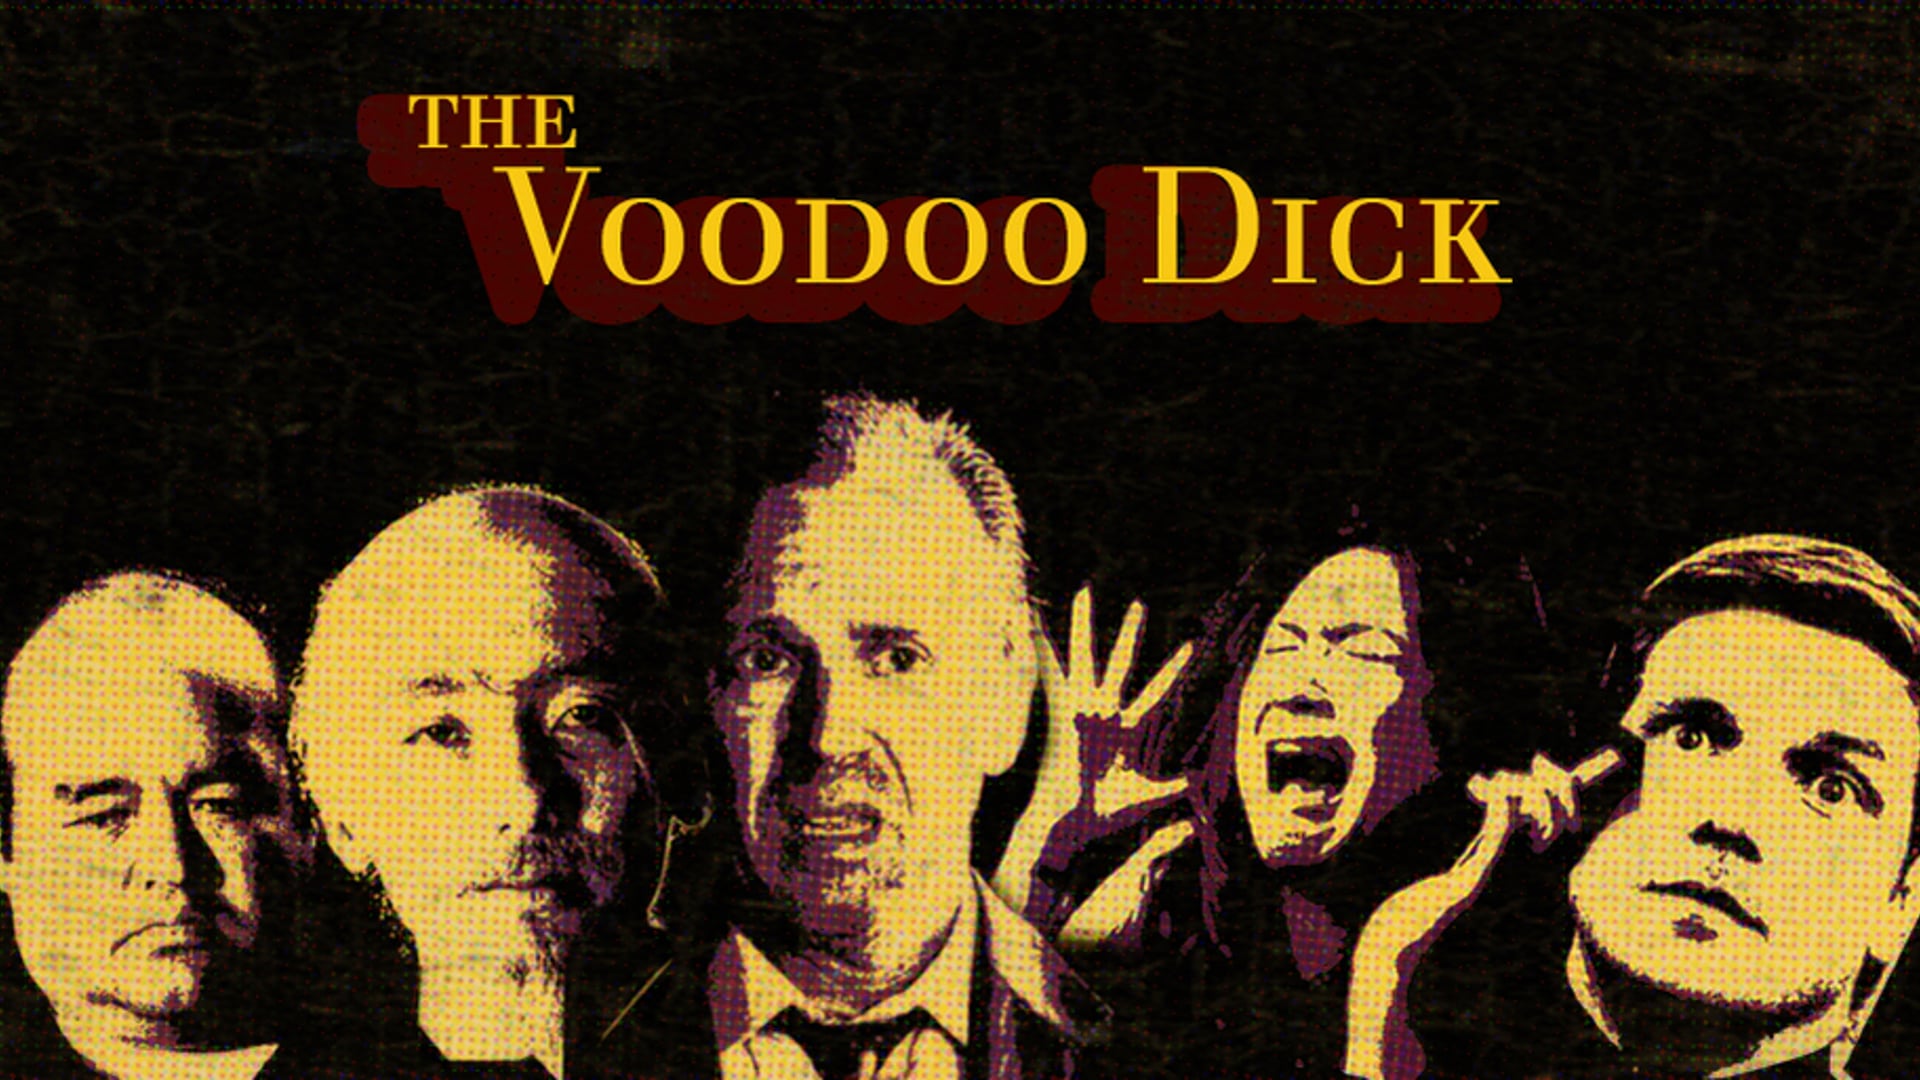 The Voodoo Dick